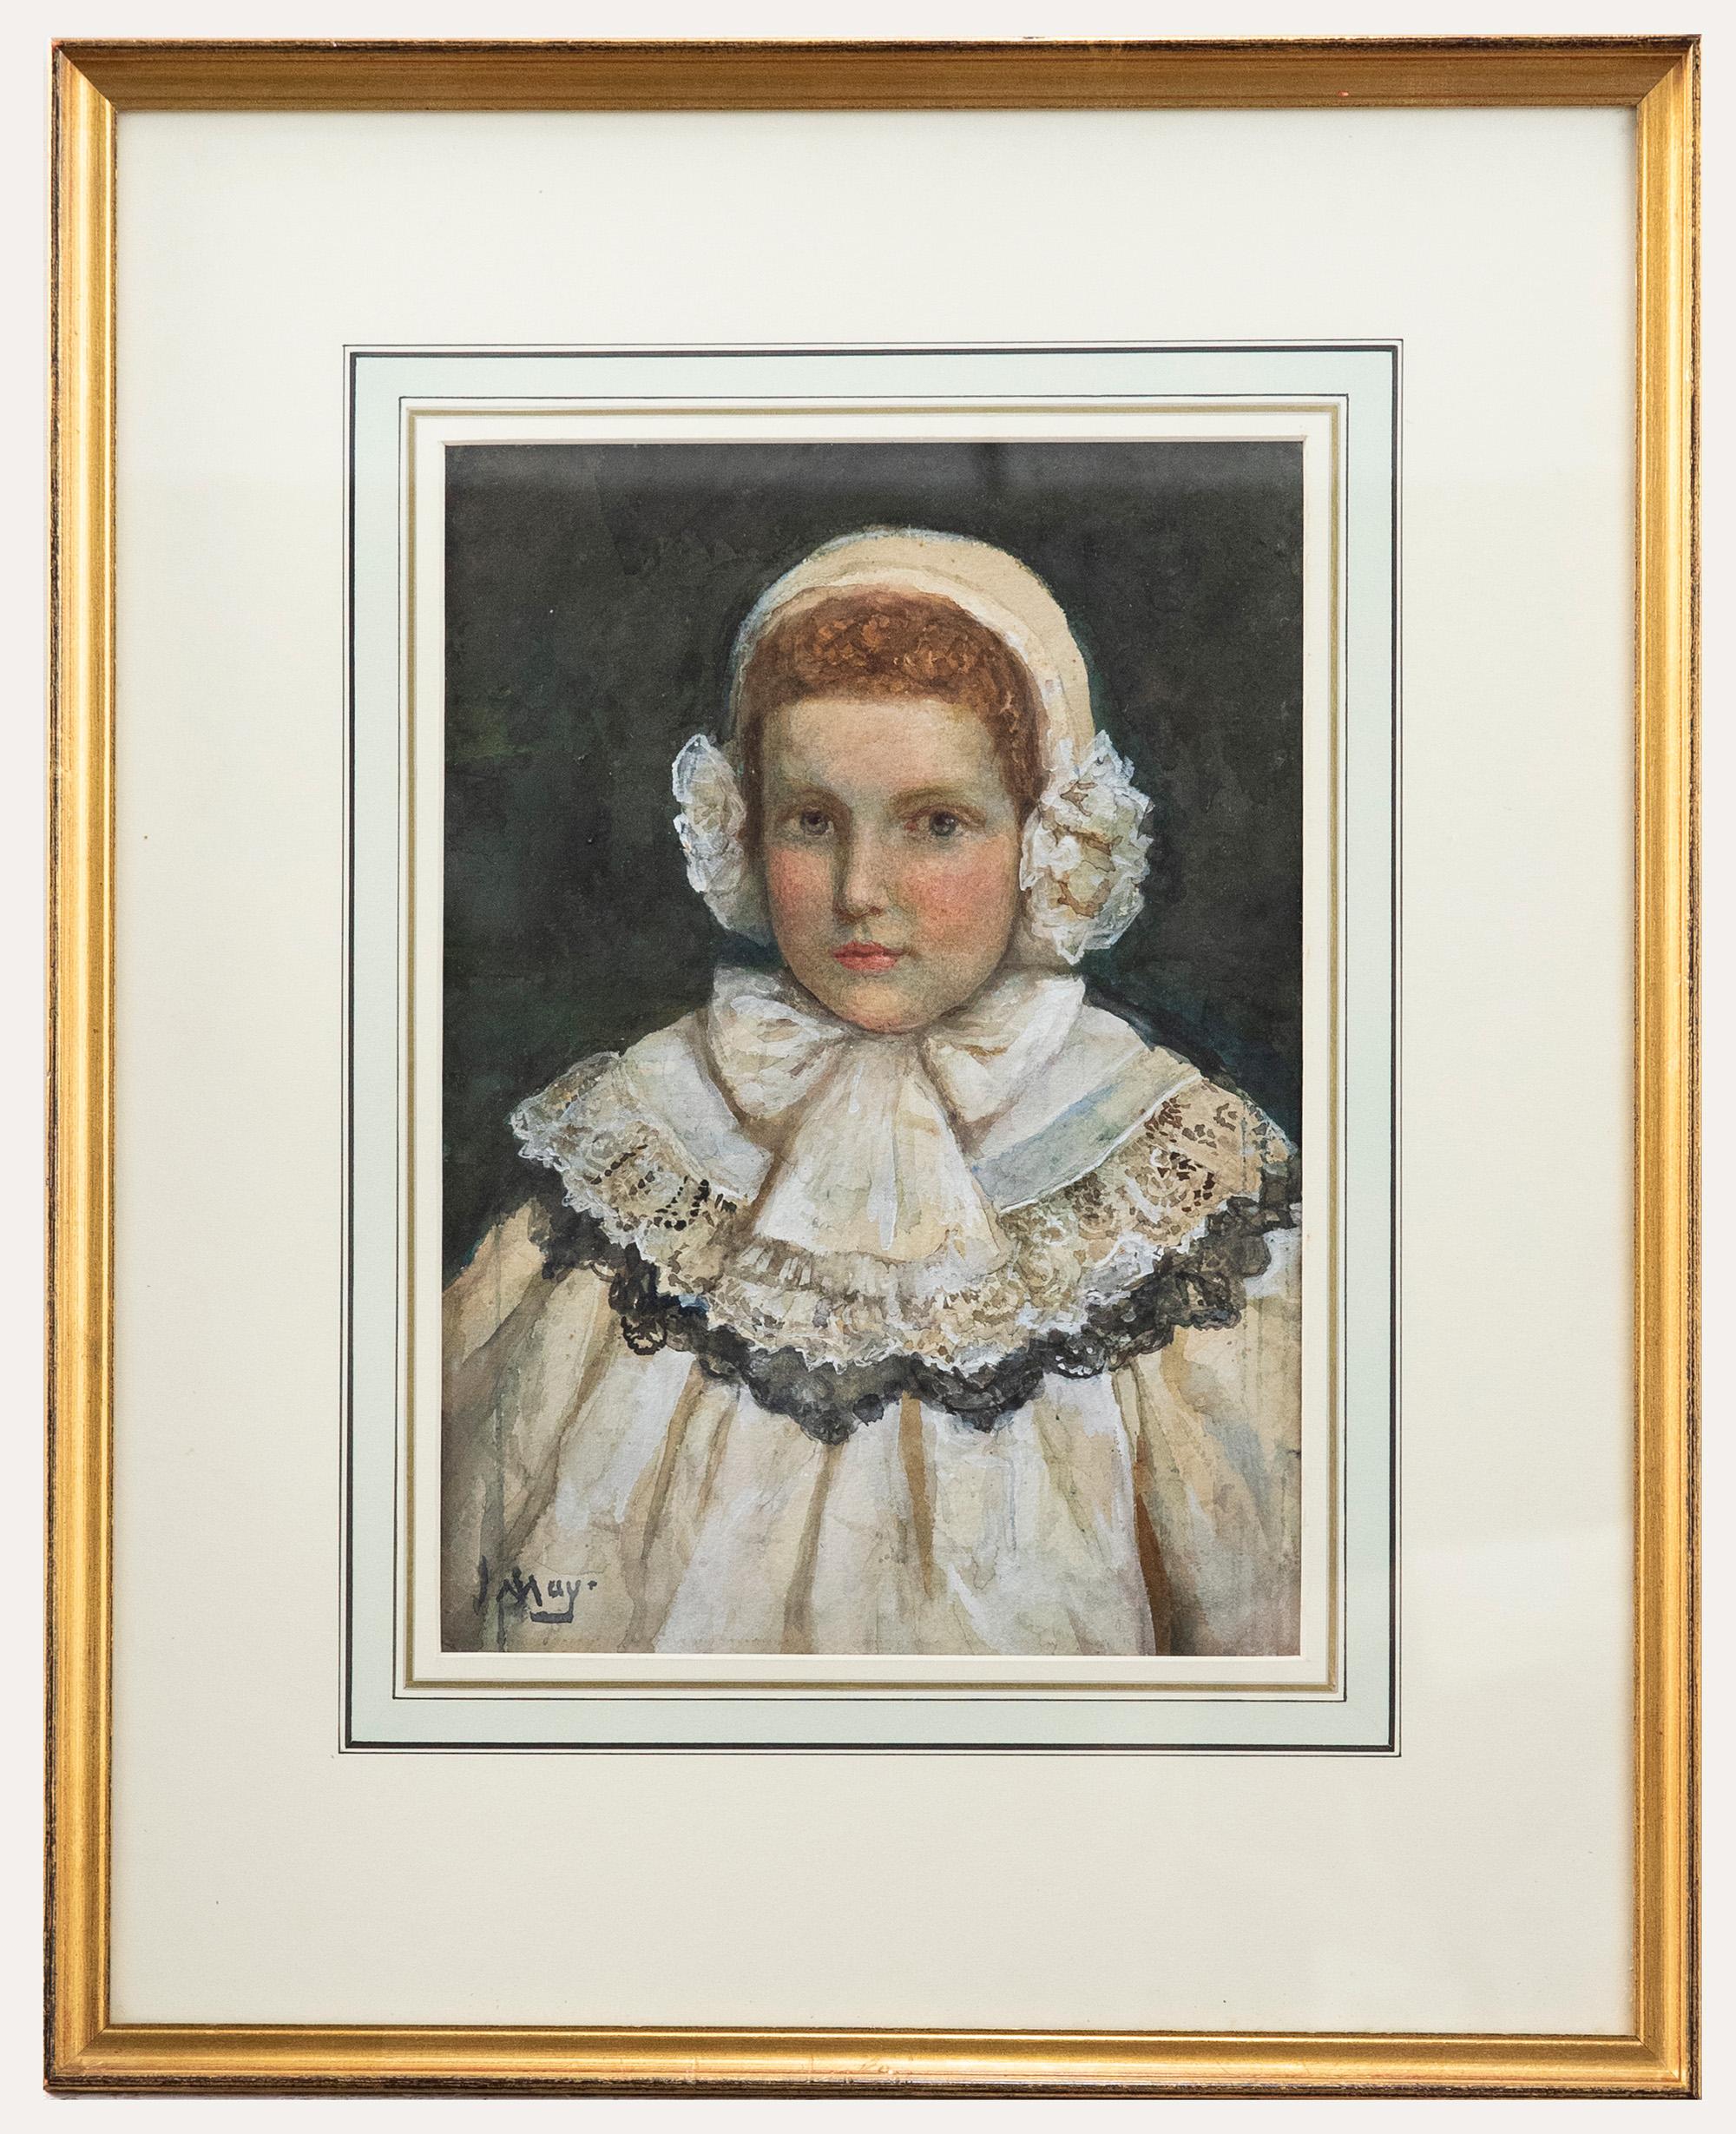 Unknown Portrait – J. May – gerahmtes Aquarell des späten 19. Jahrhunderts, Porträt eines Kindes in Spitze, J. May